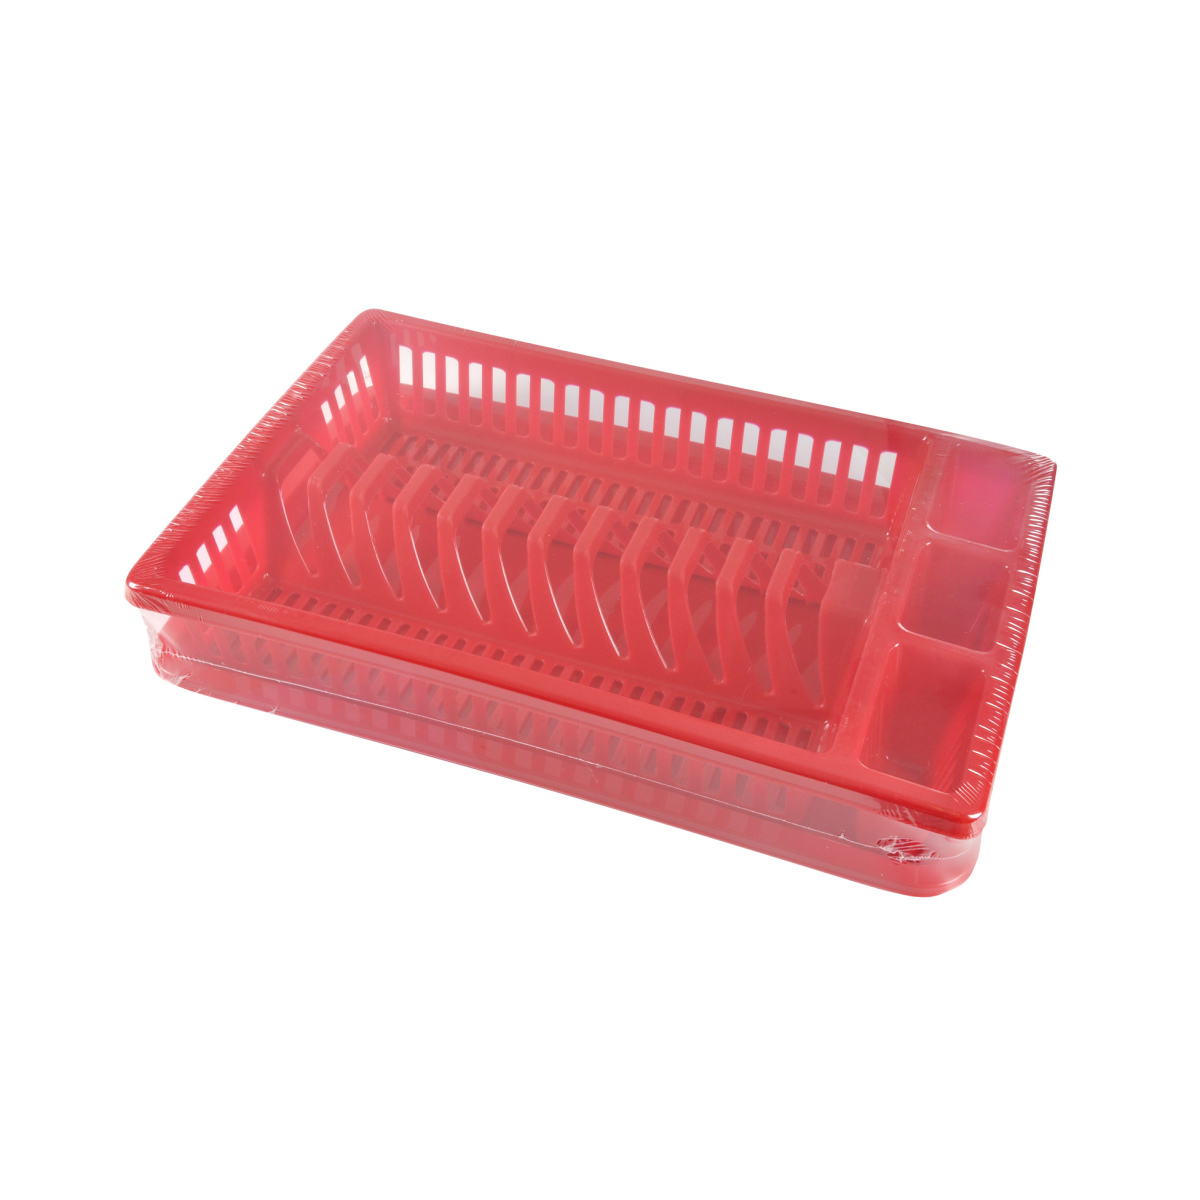 Egouttoir  vaisselle avec plateau rouge 41 cm